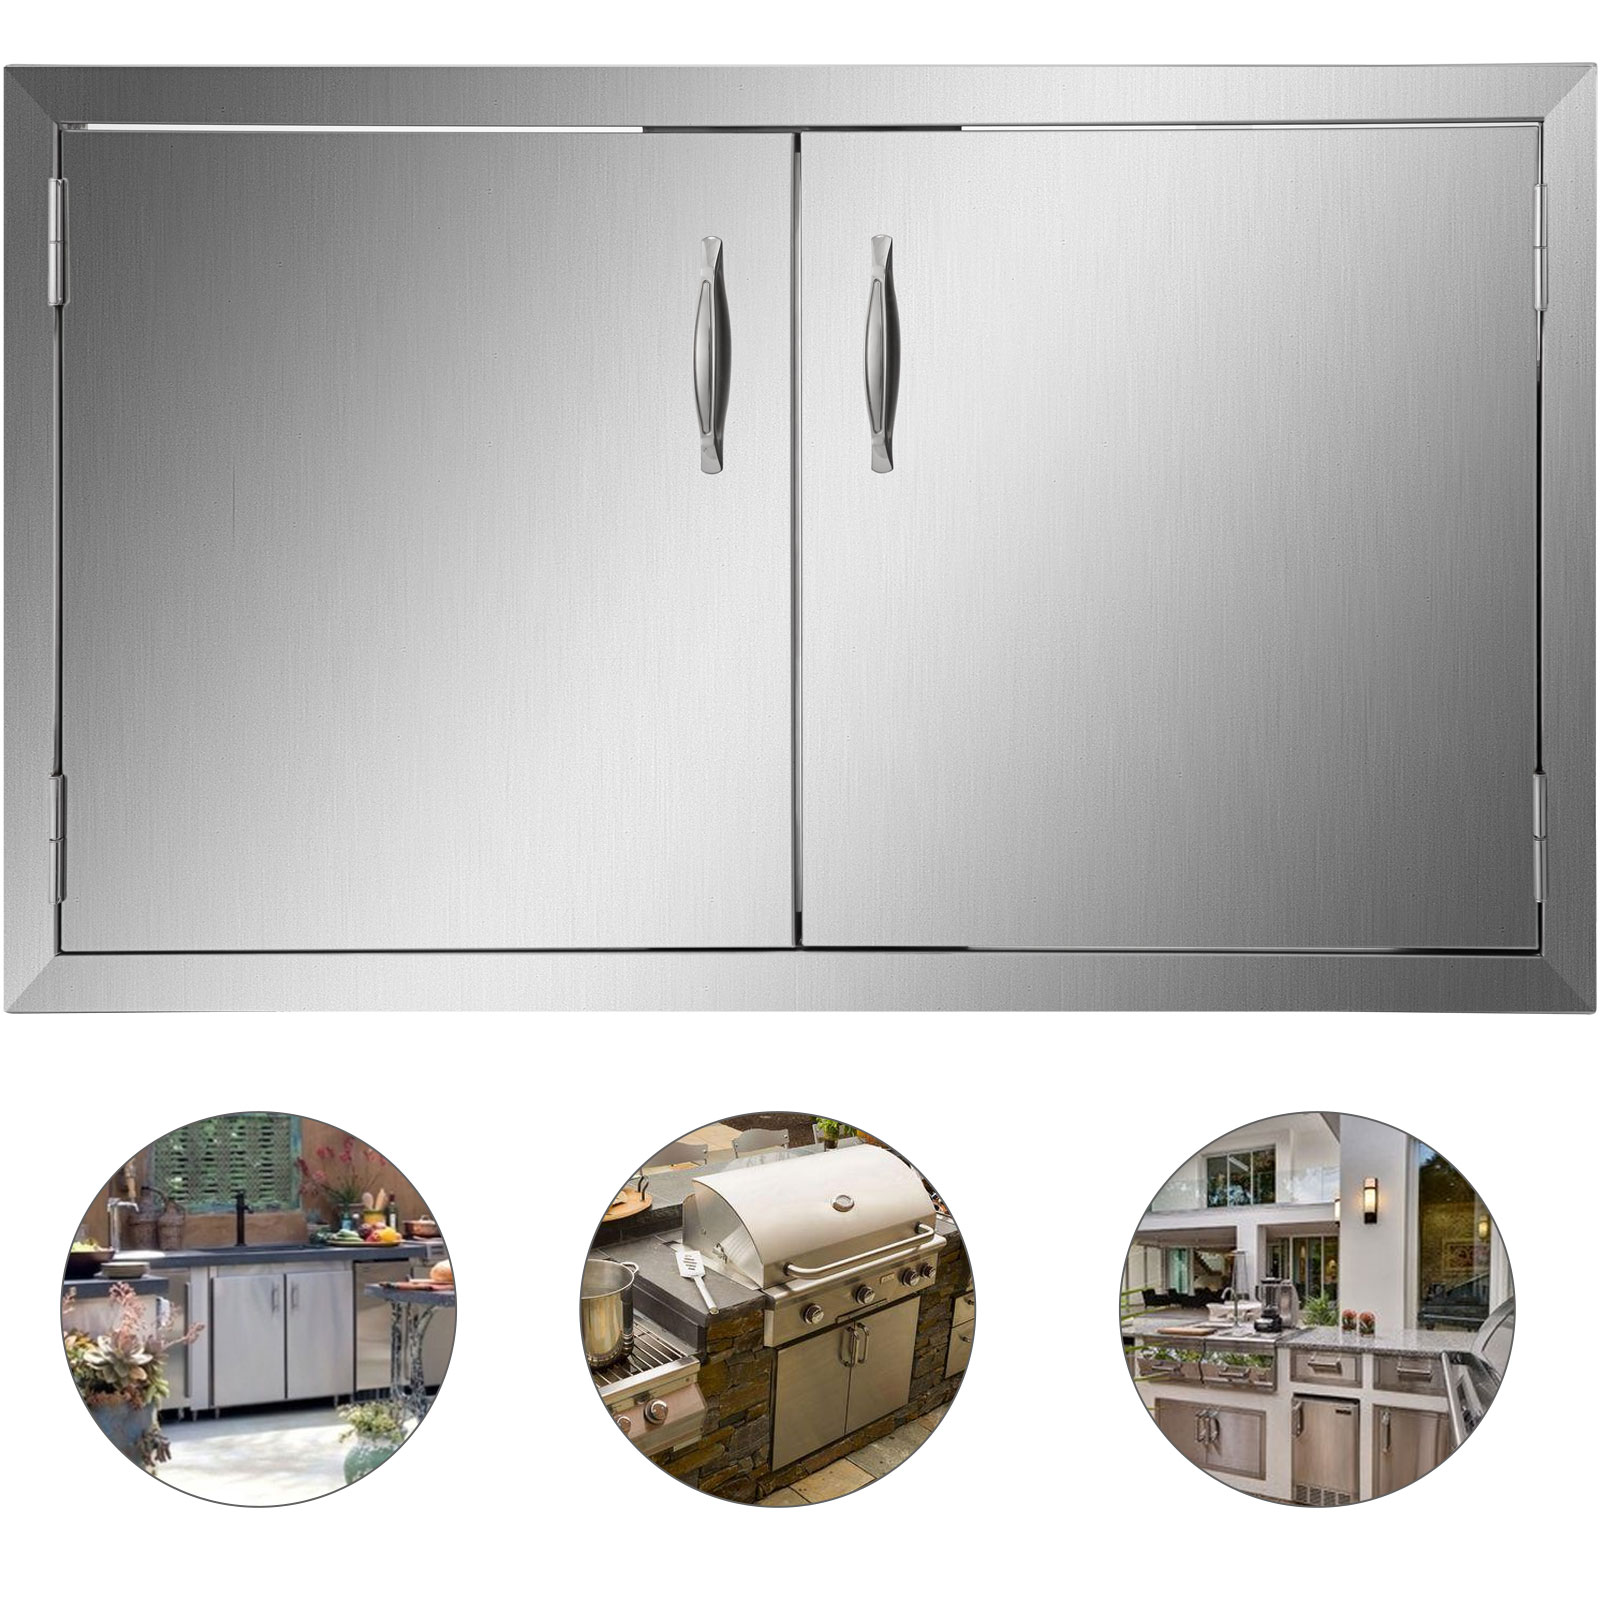 outdoor kitchen doors, stainless steel, 16x22 inch